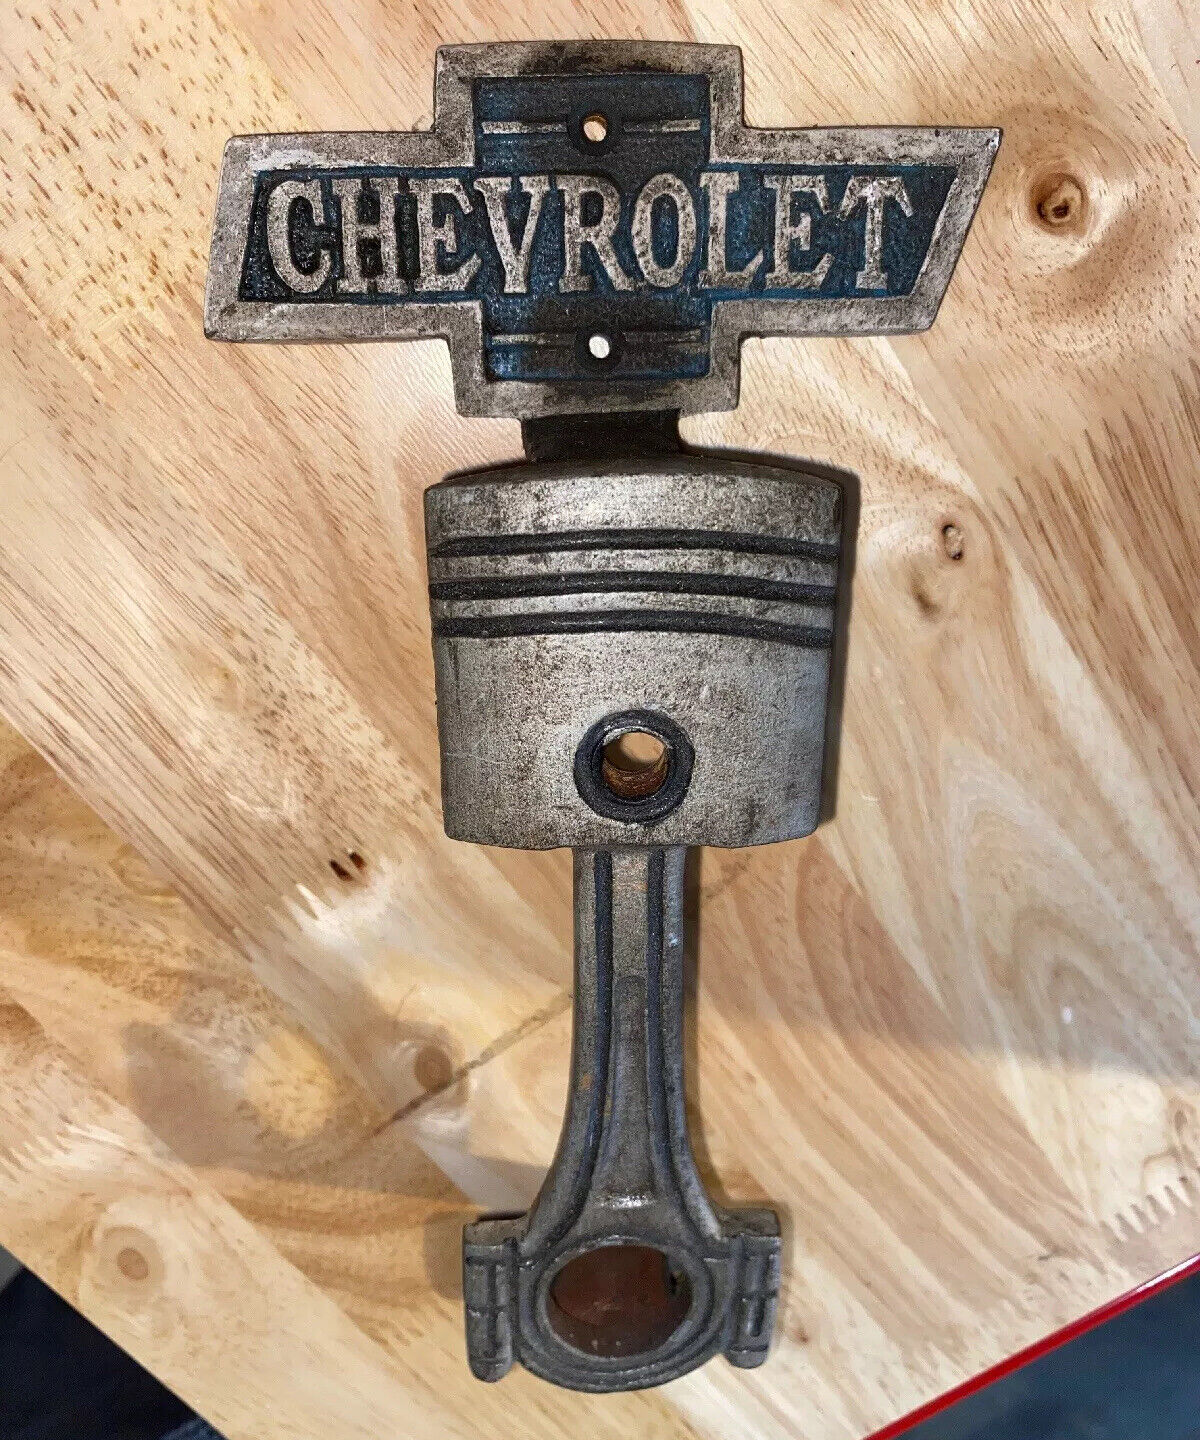 Chevrolet Chevy Door Handle Collector Solid Metal Patina Finish Sinclair Exxon